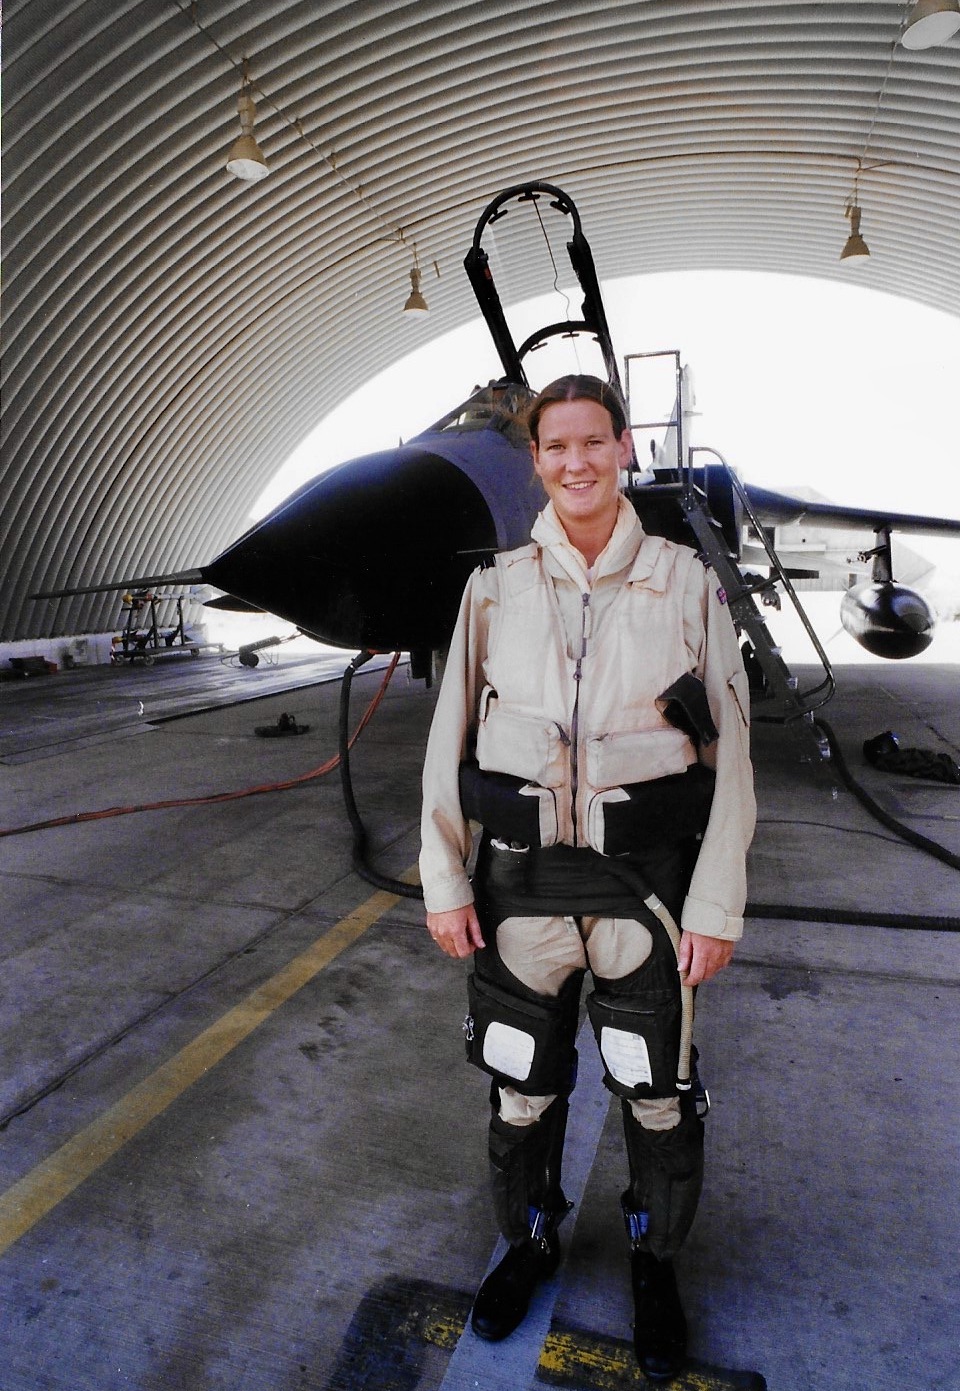 Pilot stands under hangar, before Tornado aircraft.